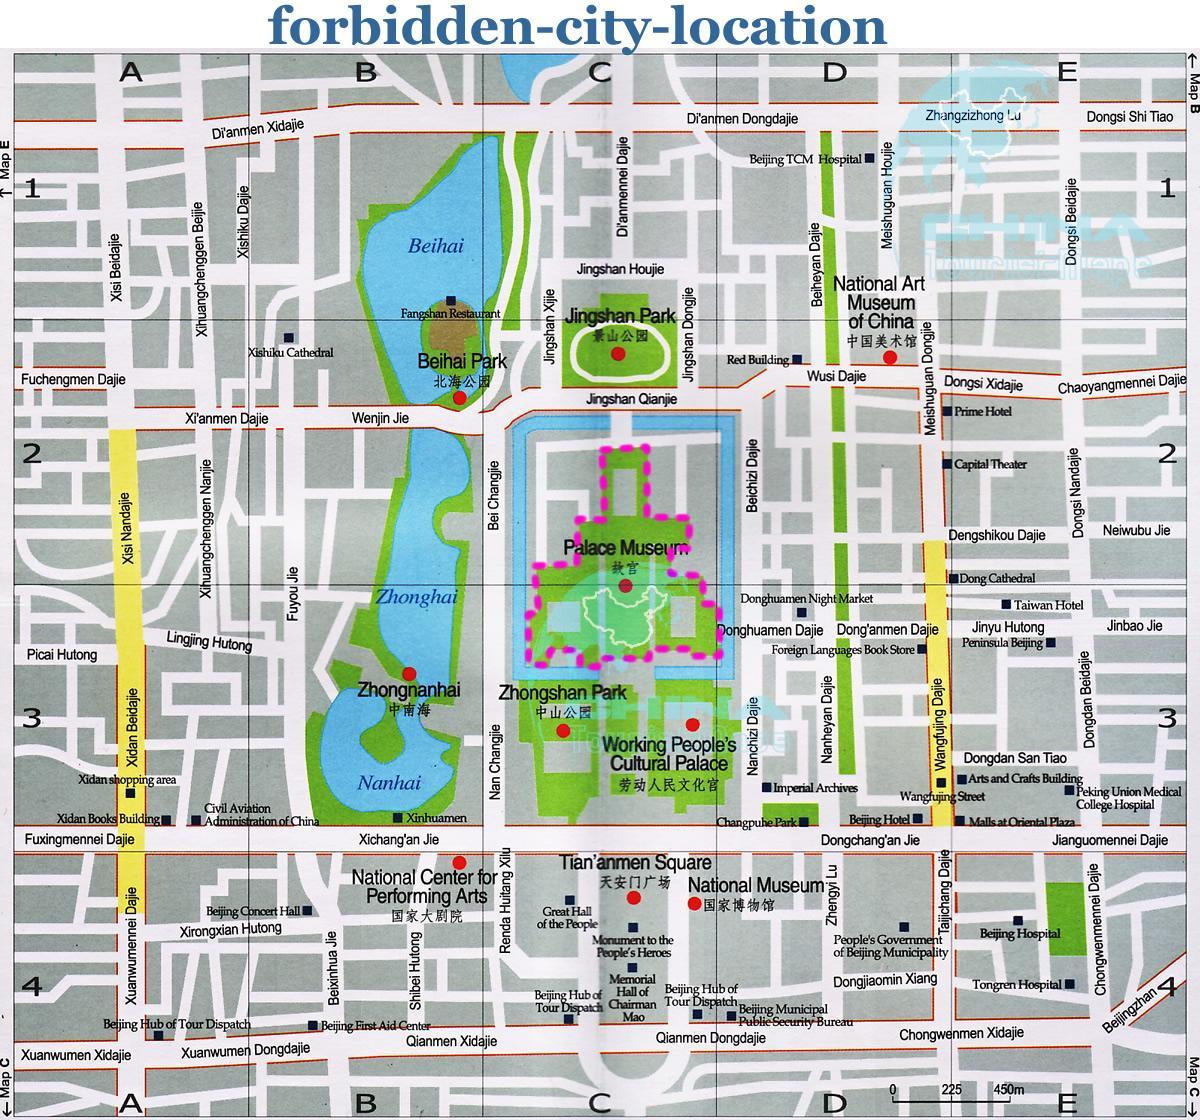 χάρτης της forbidden city λεπτομερής χάρτης